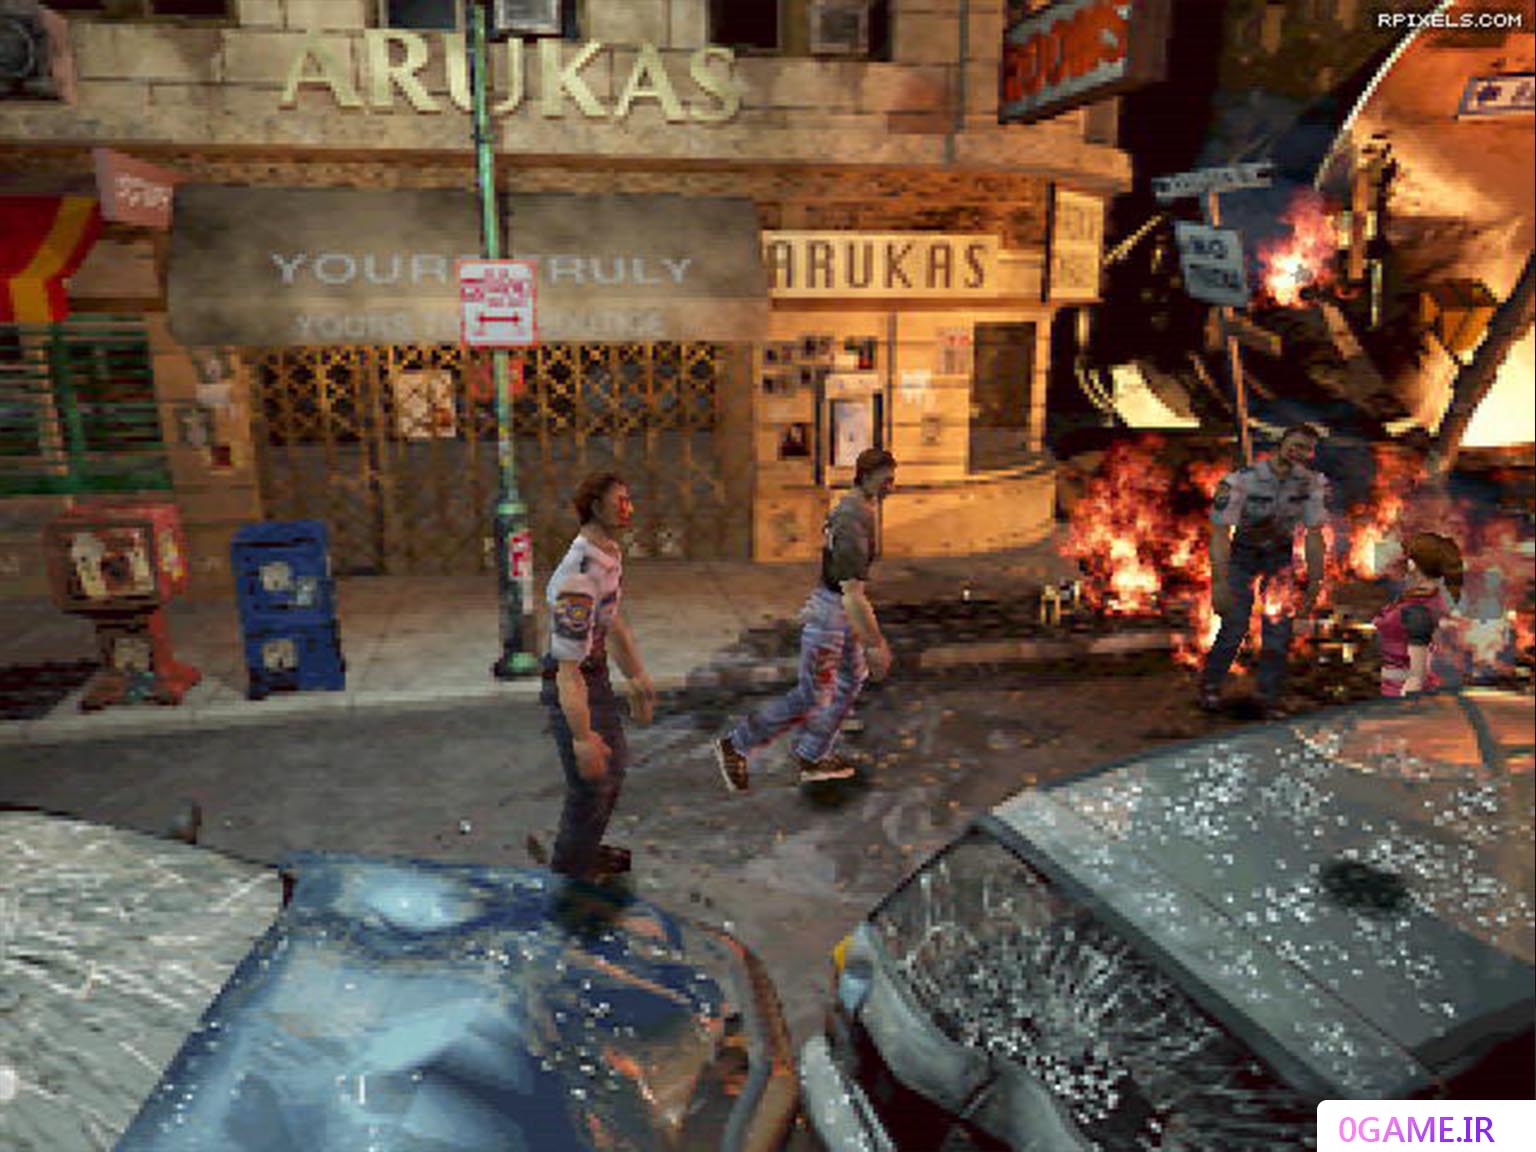 دانلود بازی رزیدنت ایول 2 (Resident Evil) نسخه کامل برای کامپیوتر